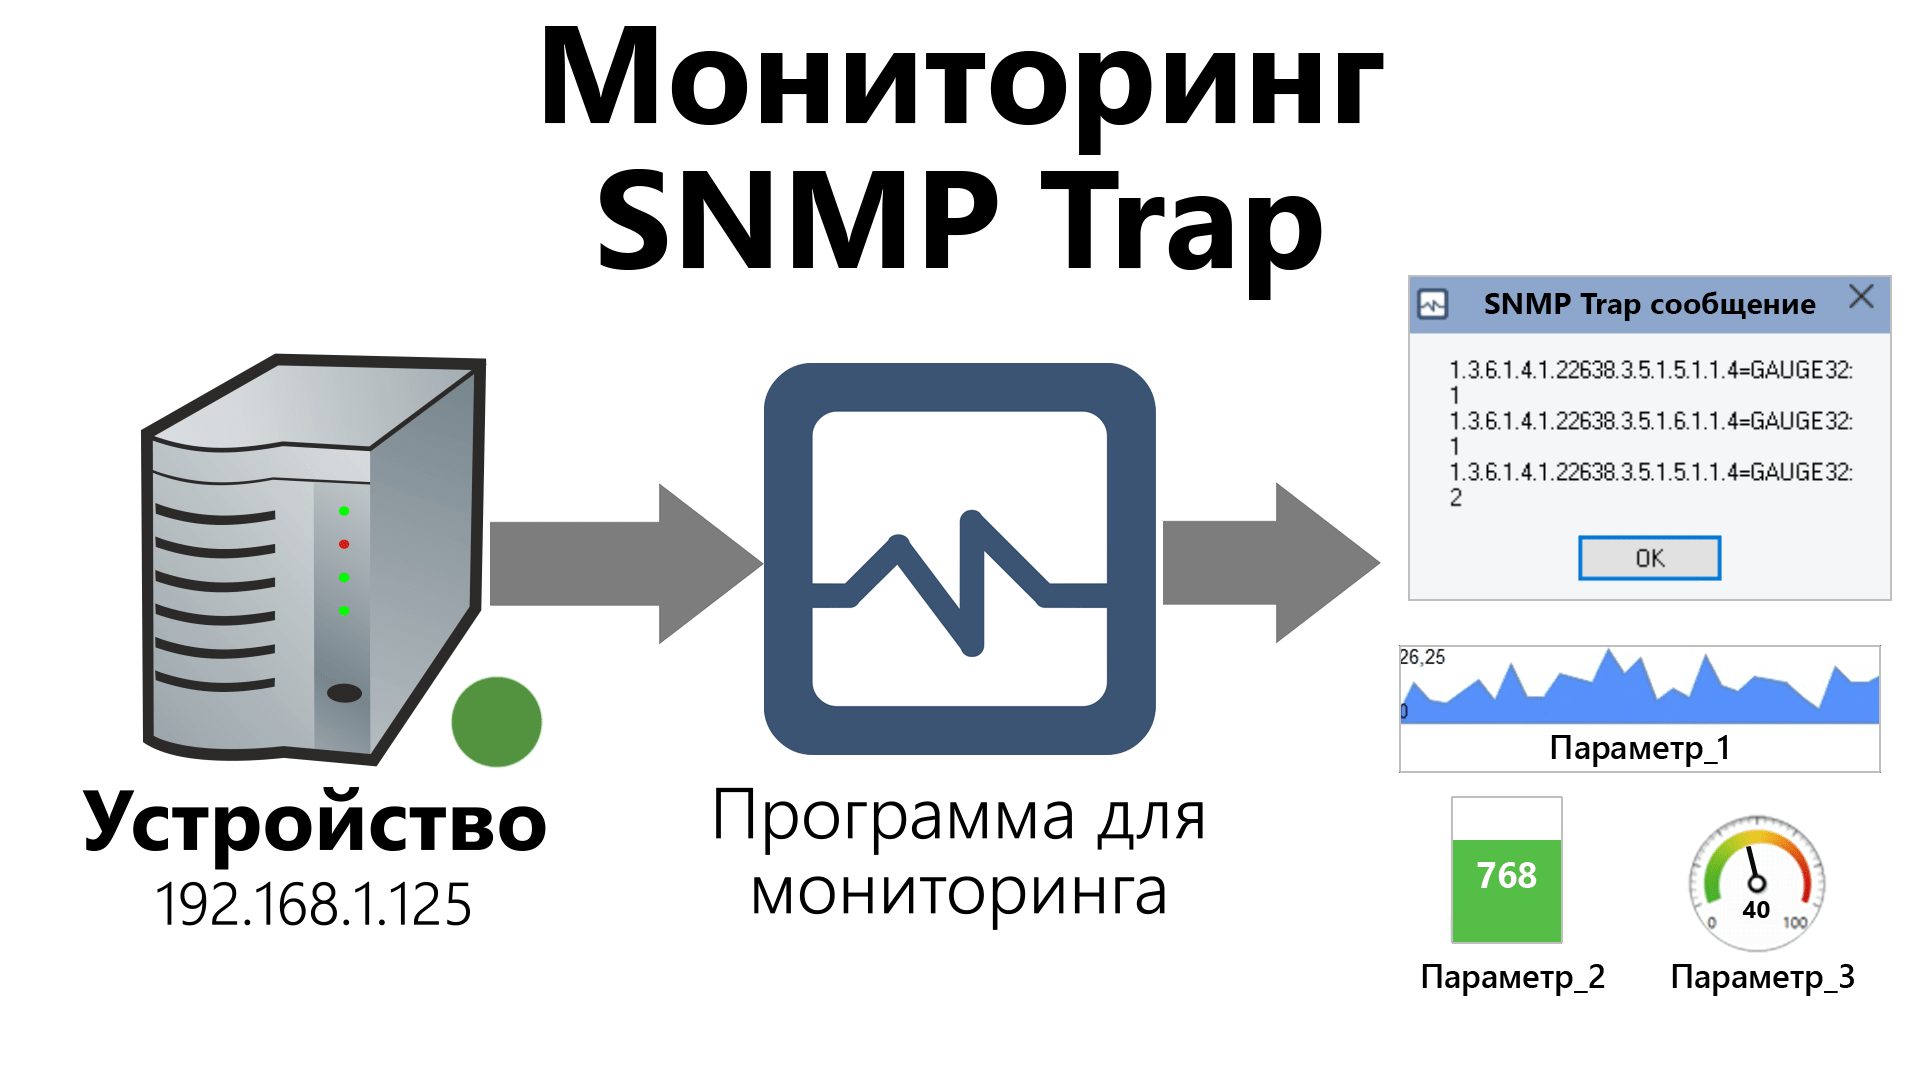  snmp trap